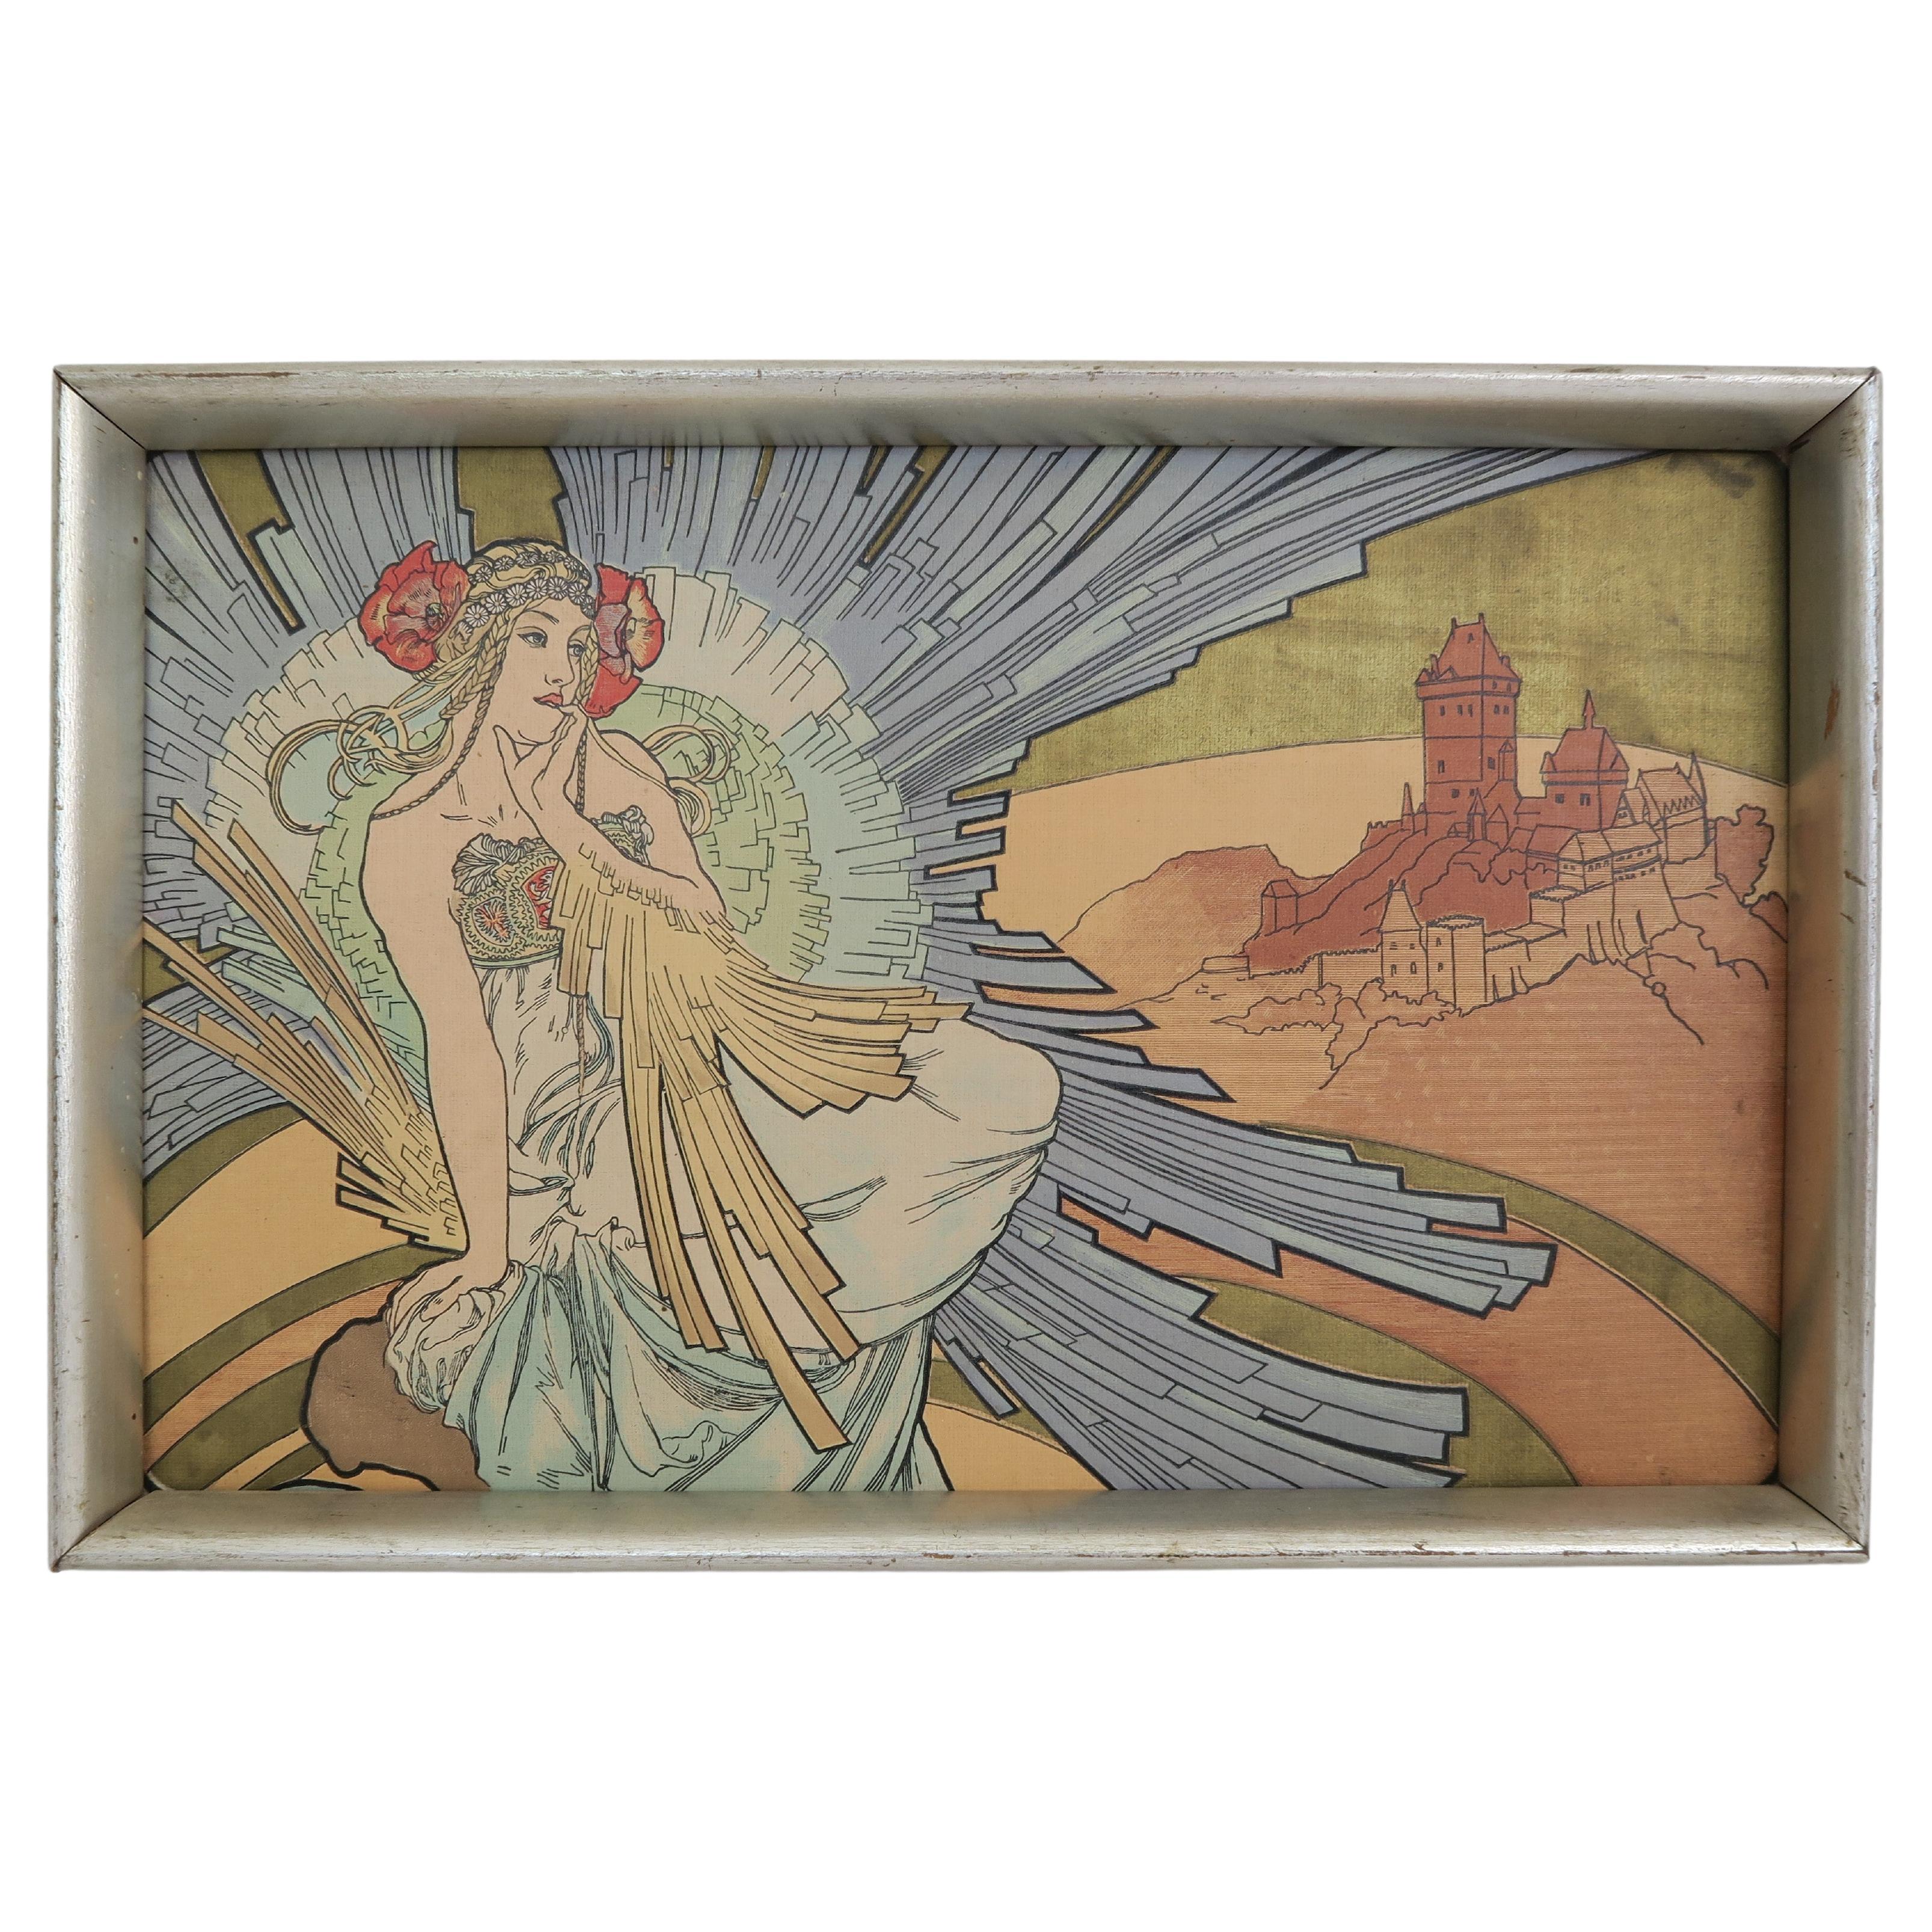 Impression sur bois originale d'après dessin de l'artiste tchèque Alfons Mucha